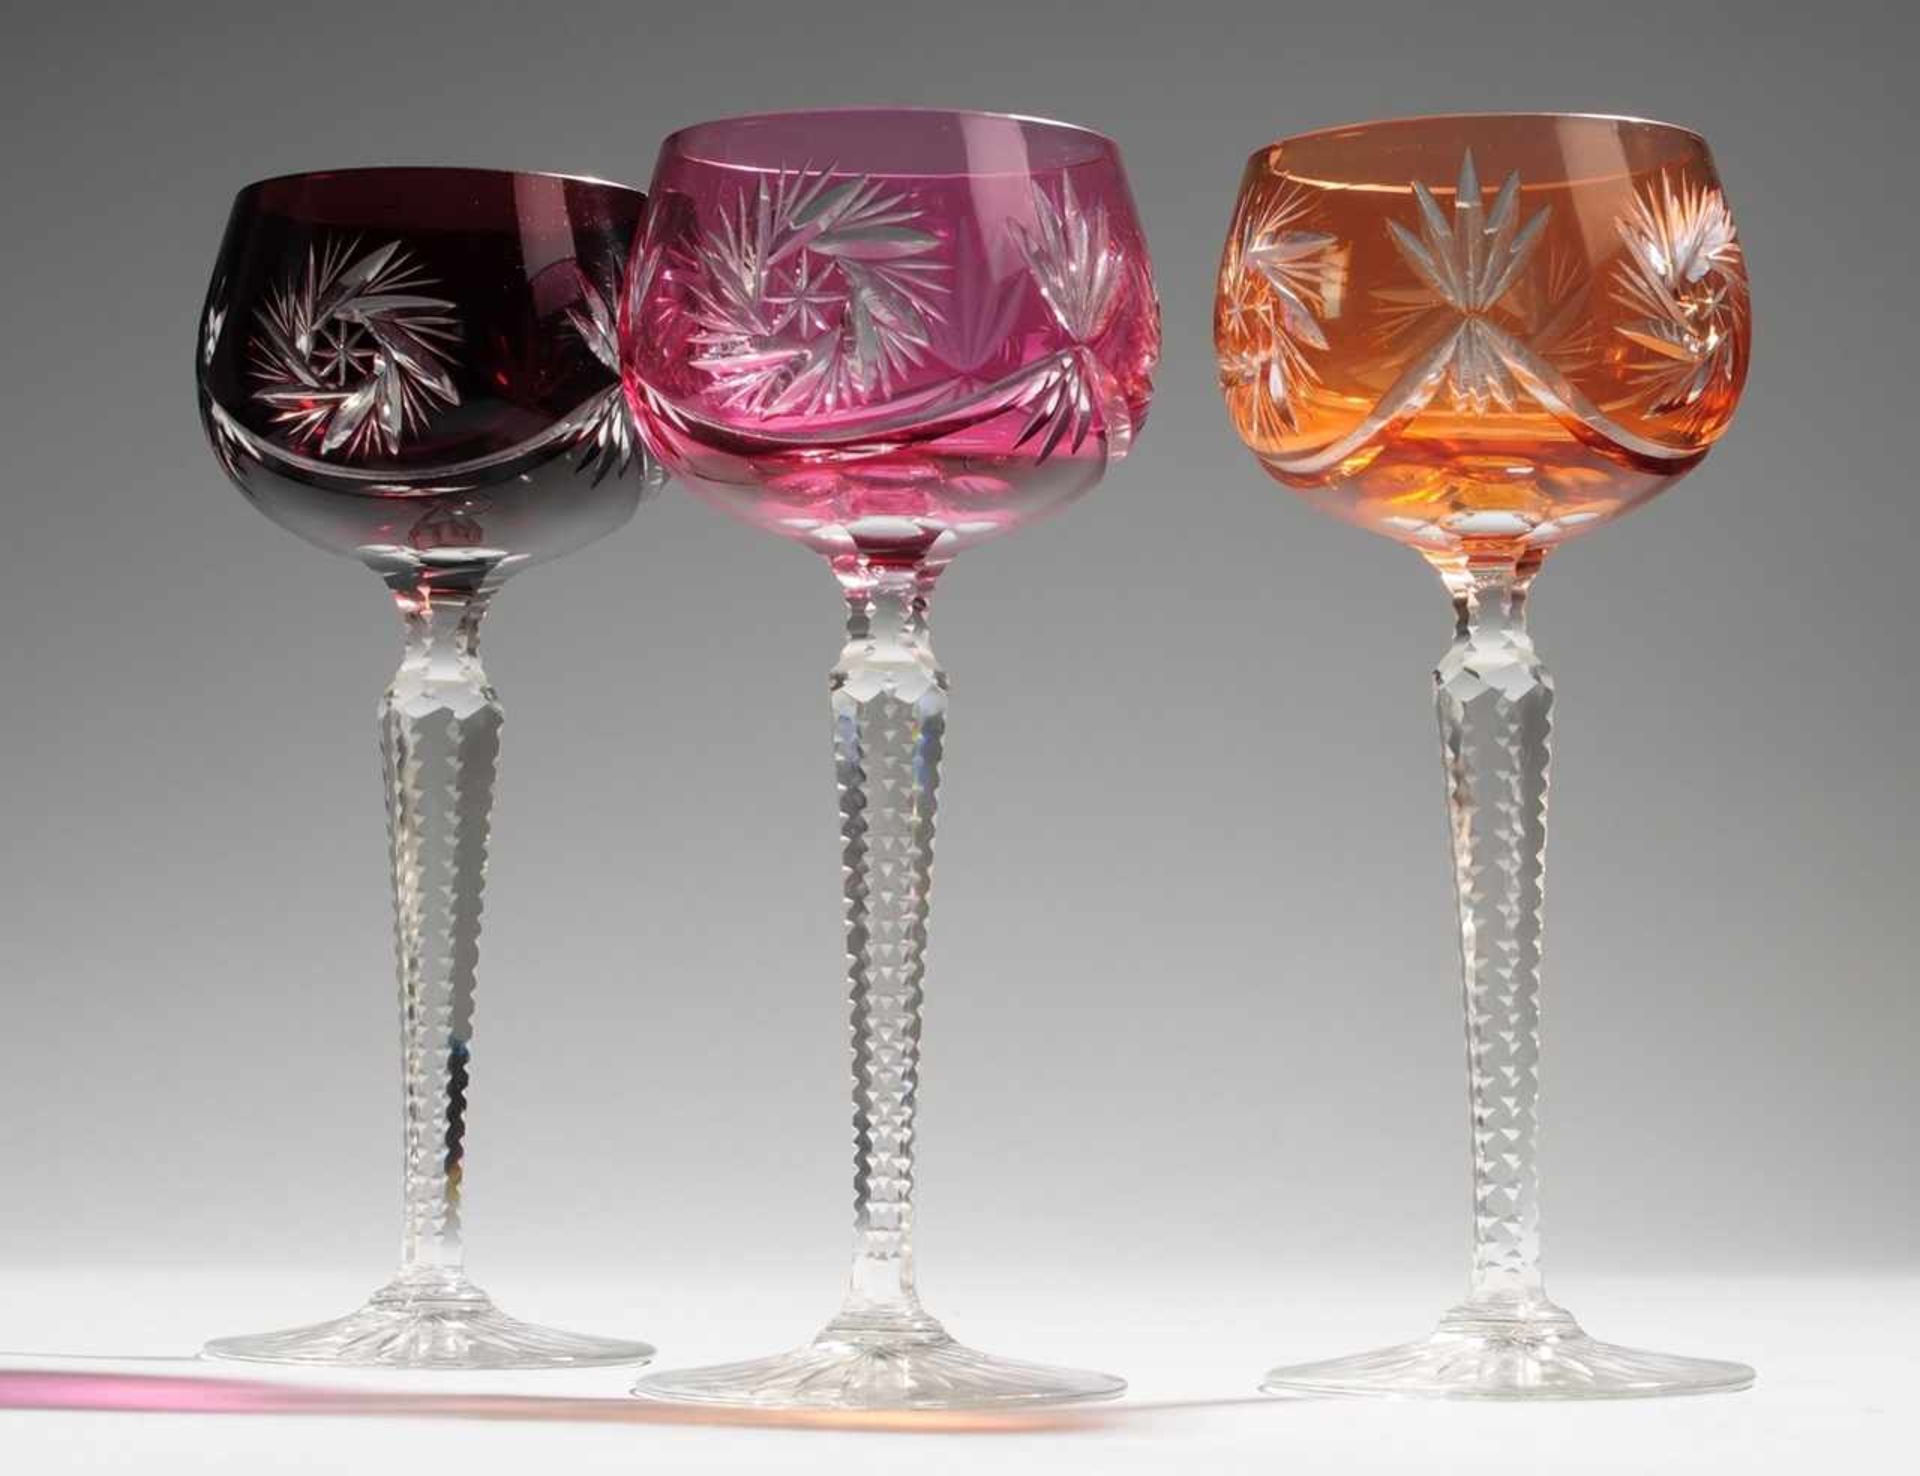 Drei RömerFarbloses Kristallglas, part. rot, violett u. orangefarben überfangen. Formgeblasen u.